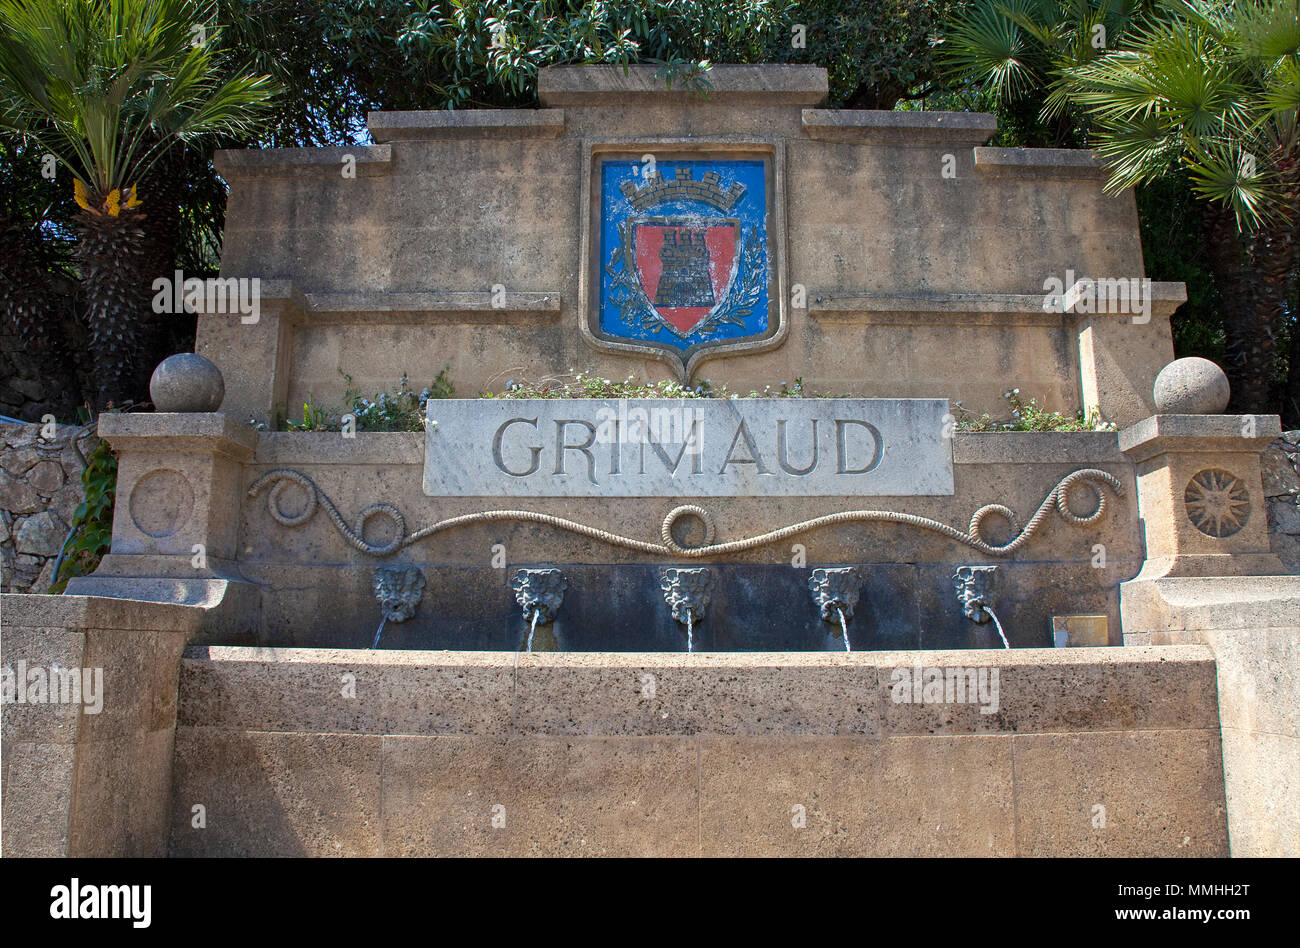 Gut mit Dorf crest in Grimaud, Cote d'Azur, Südfrankreich, Frankreich, Europa Stockfoto